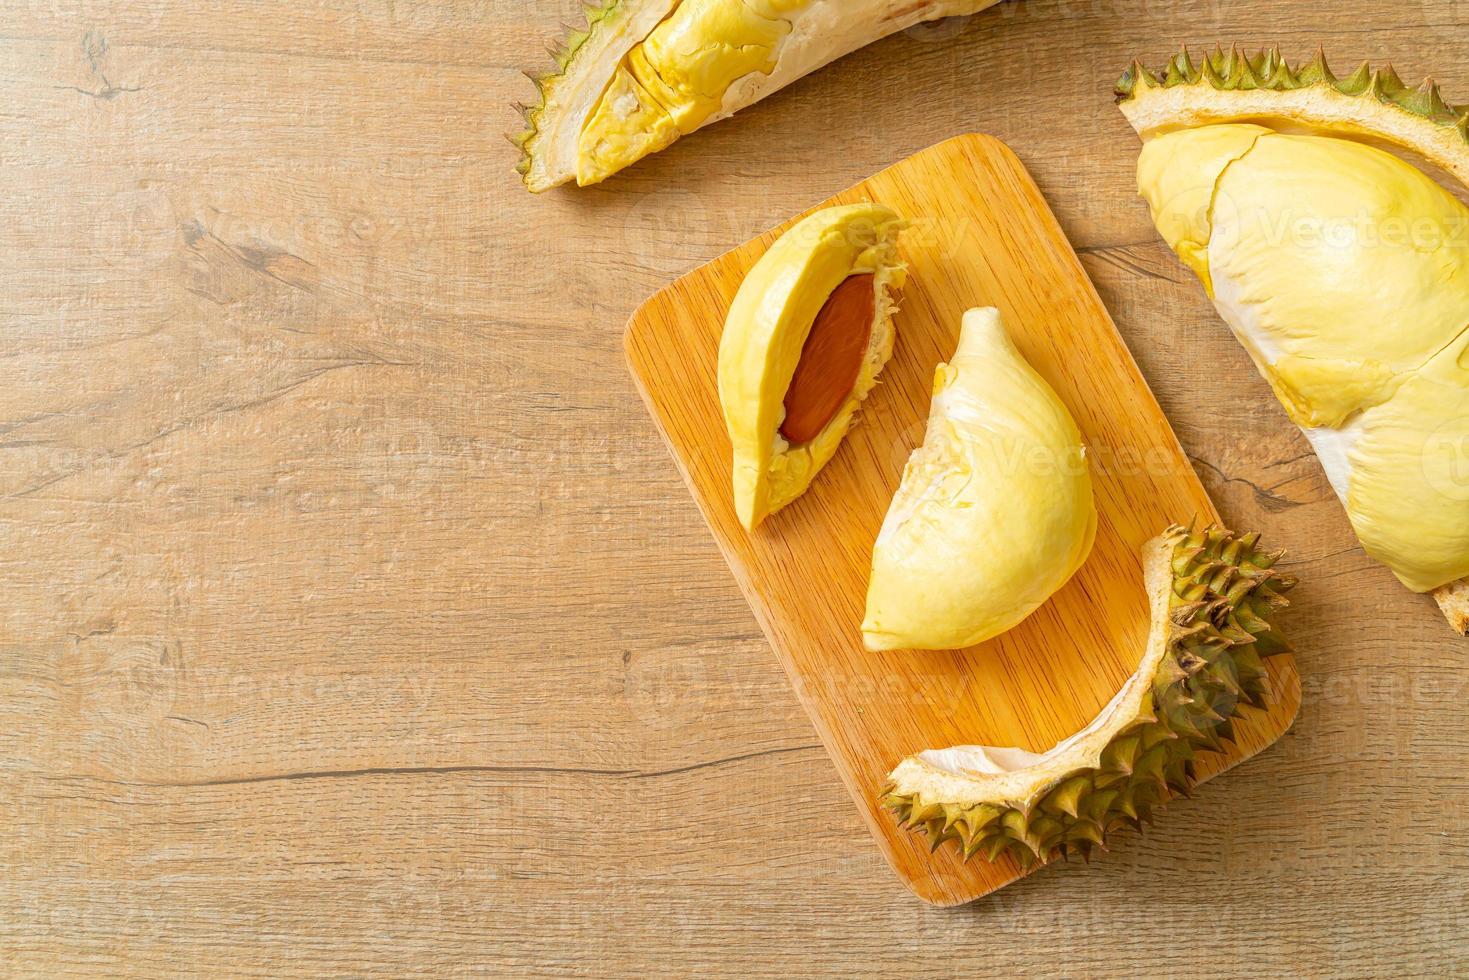 durian gerijpt en vers, durian schil op witte plaat foto